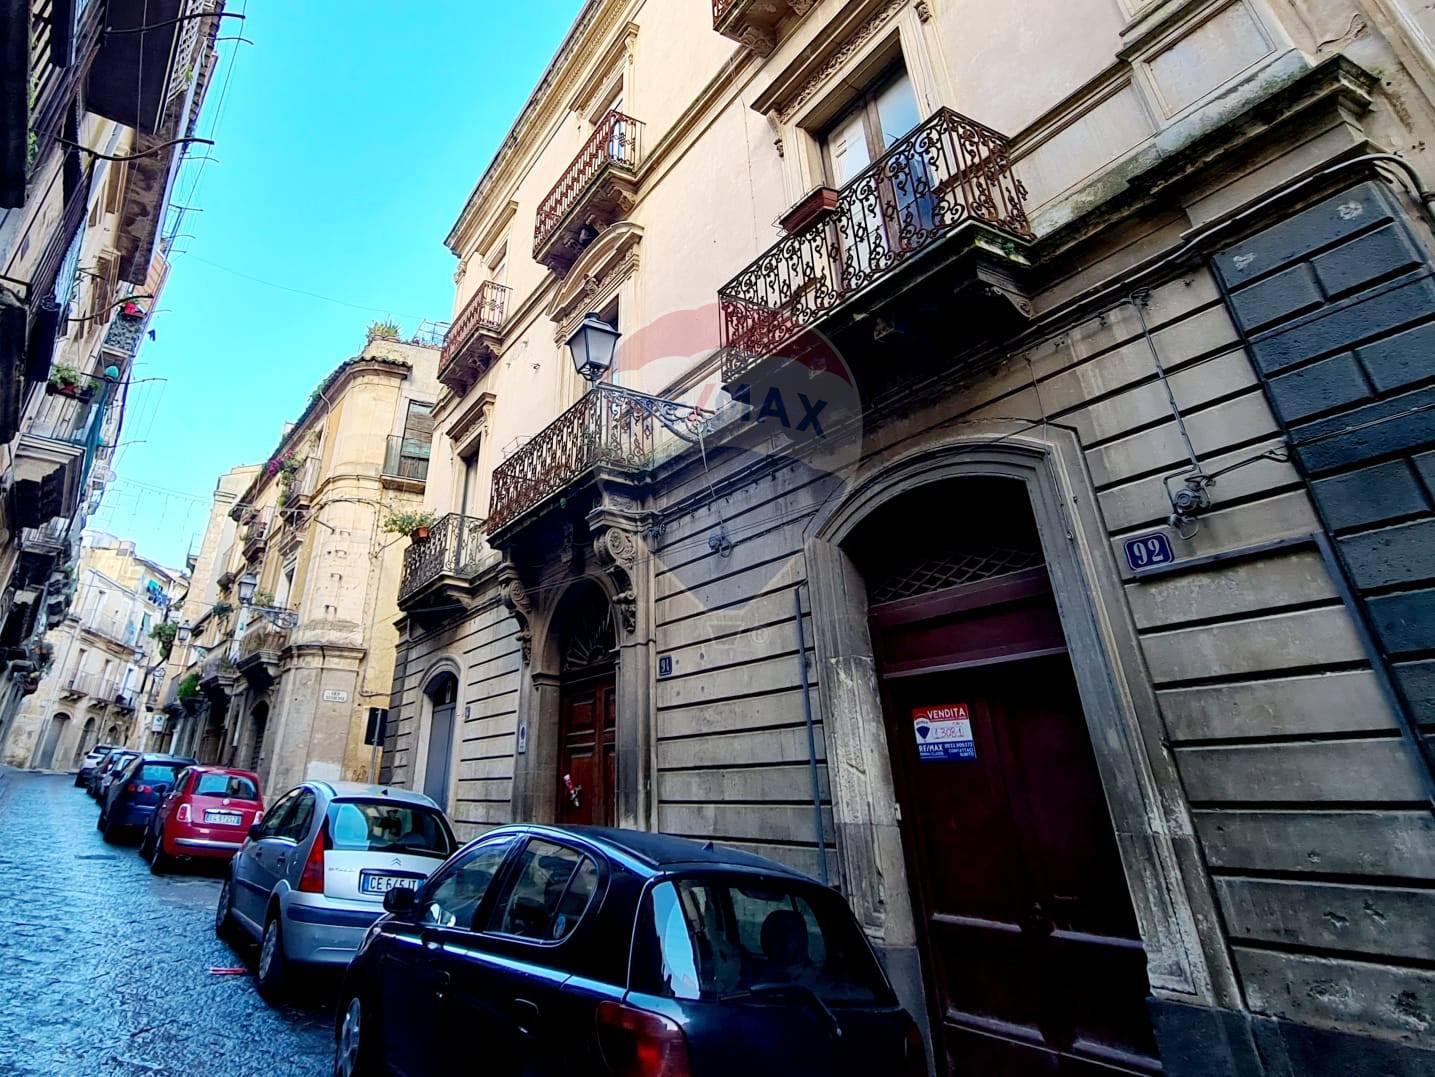 Appartamento in vendita a Caltagirone, 2 locali, prezzo € 25.000 | CambioCasa.it